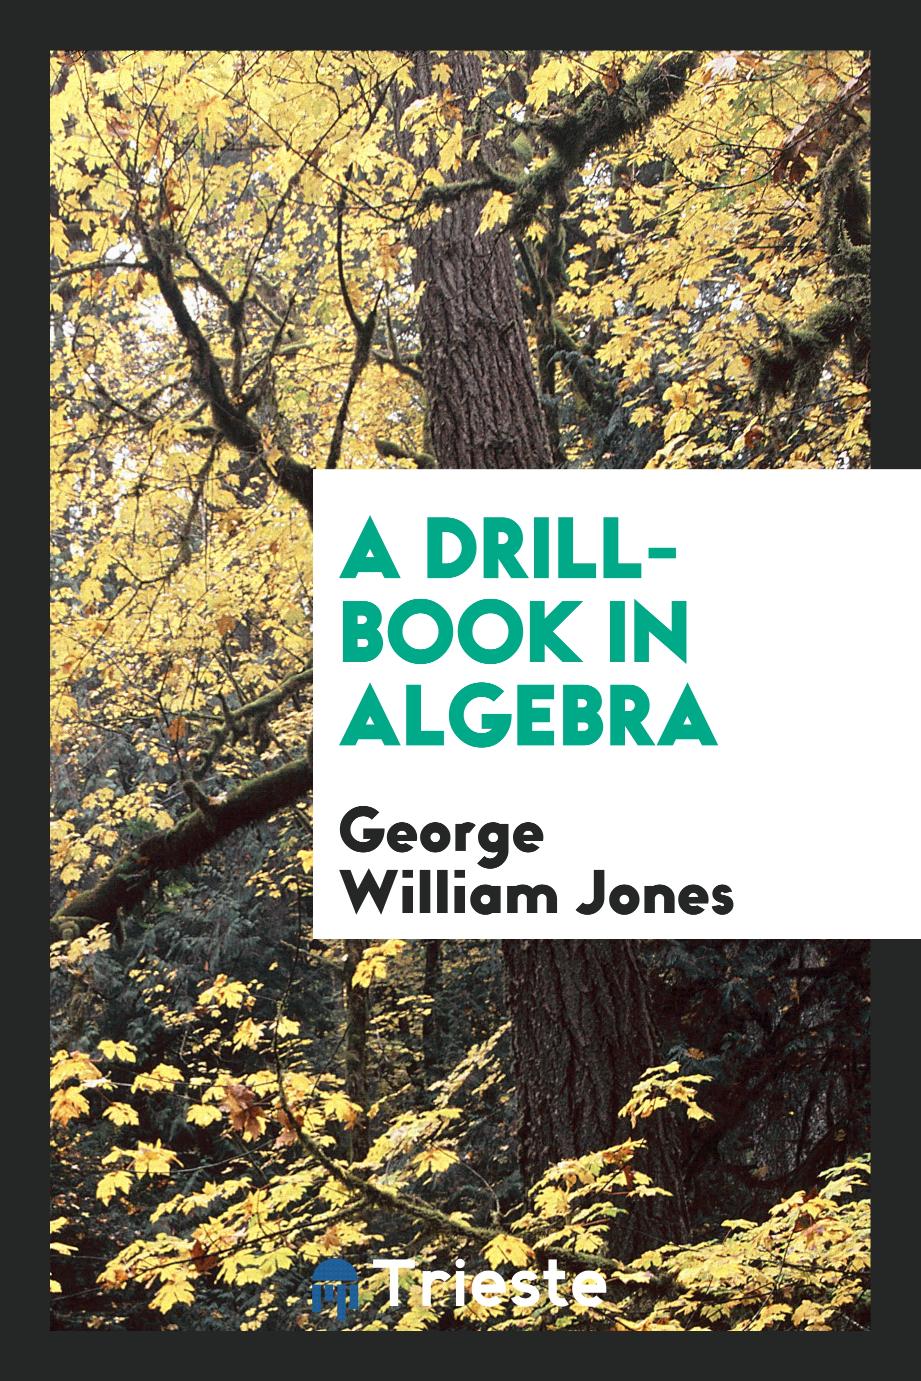 A drill-book in algebra